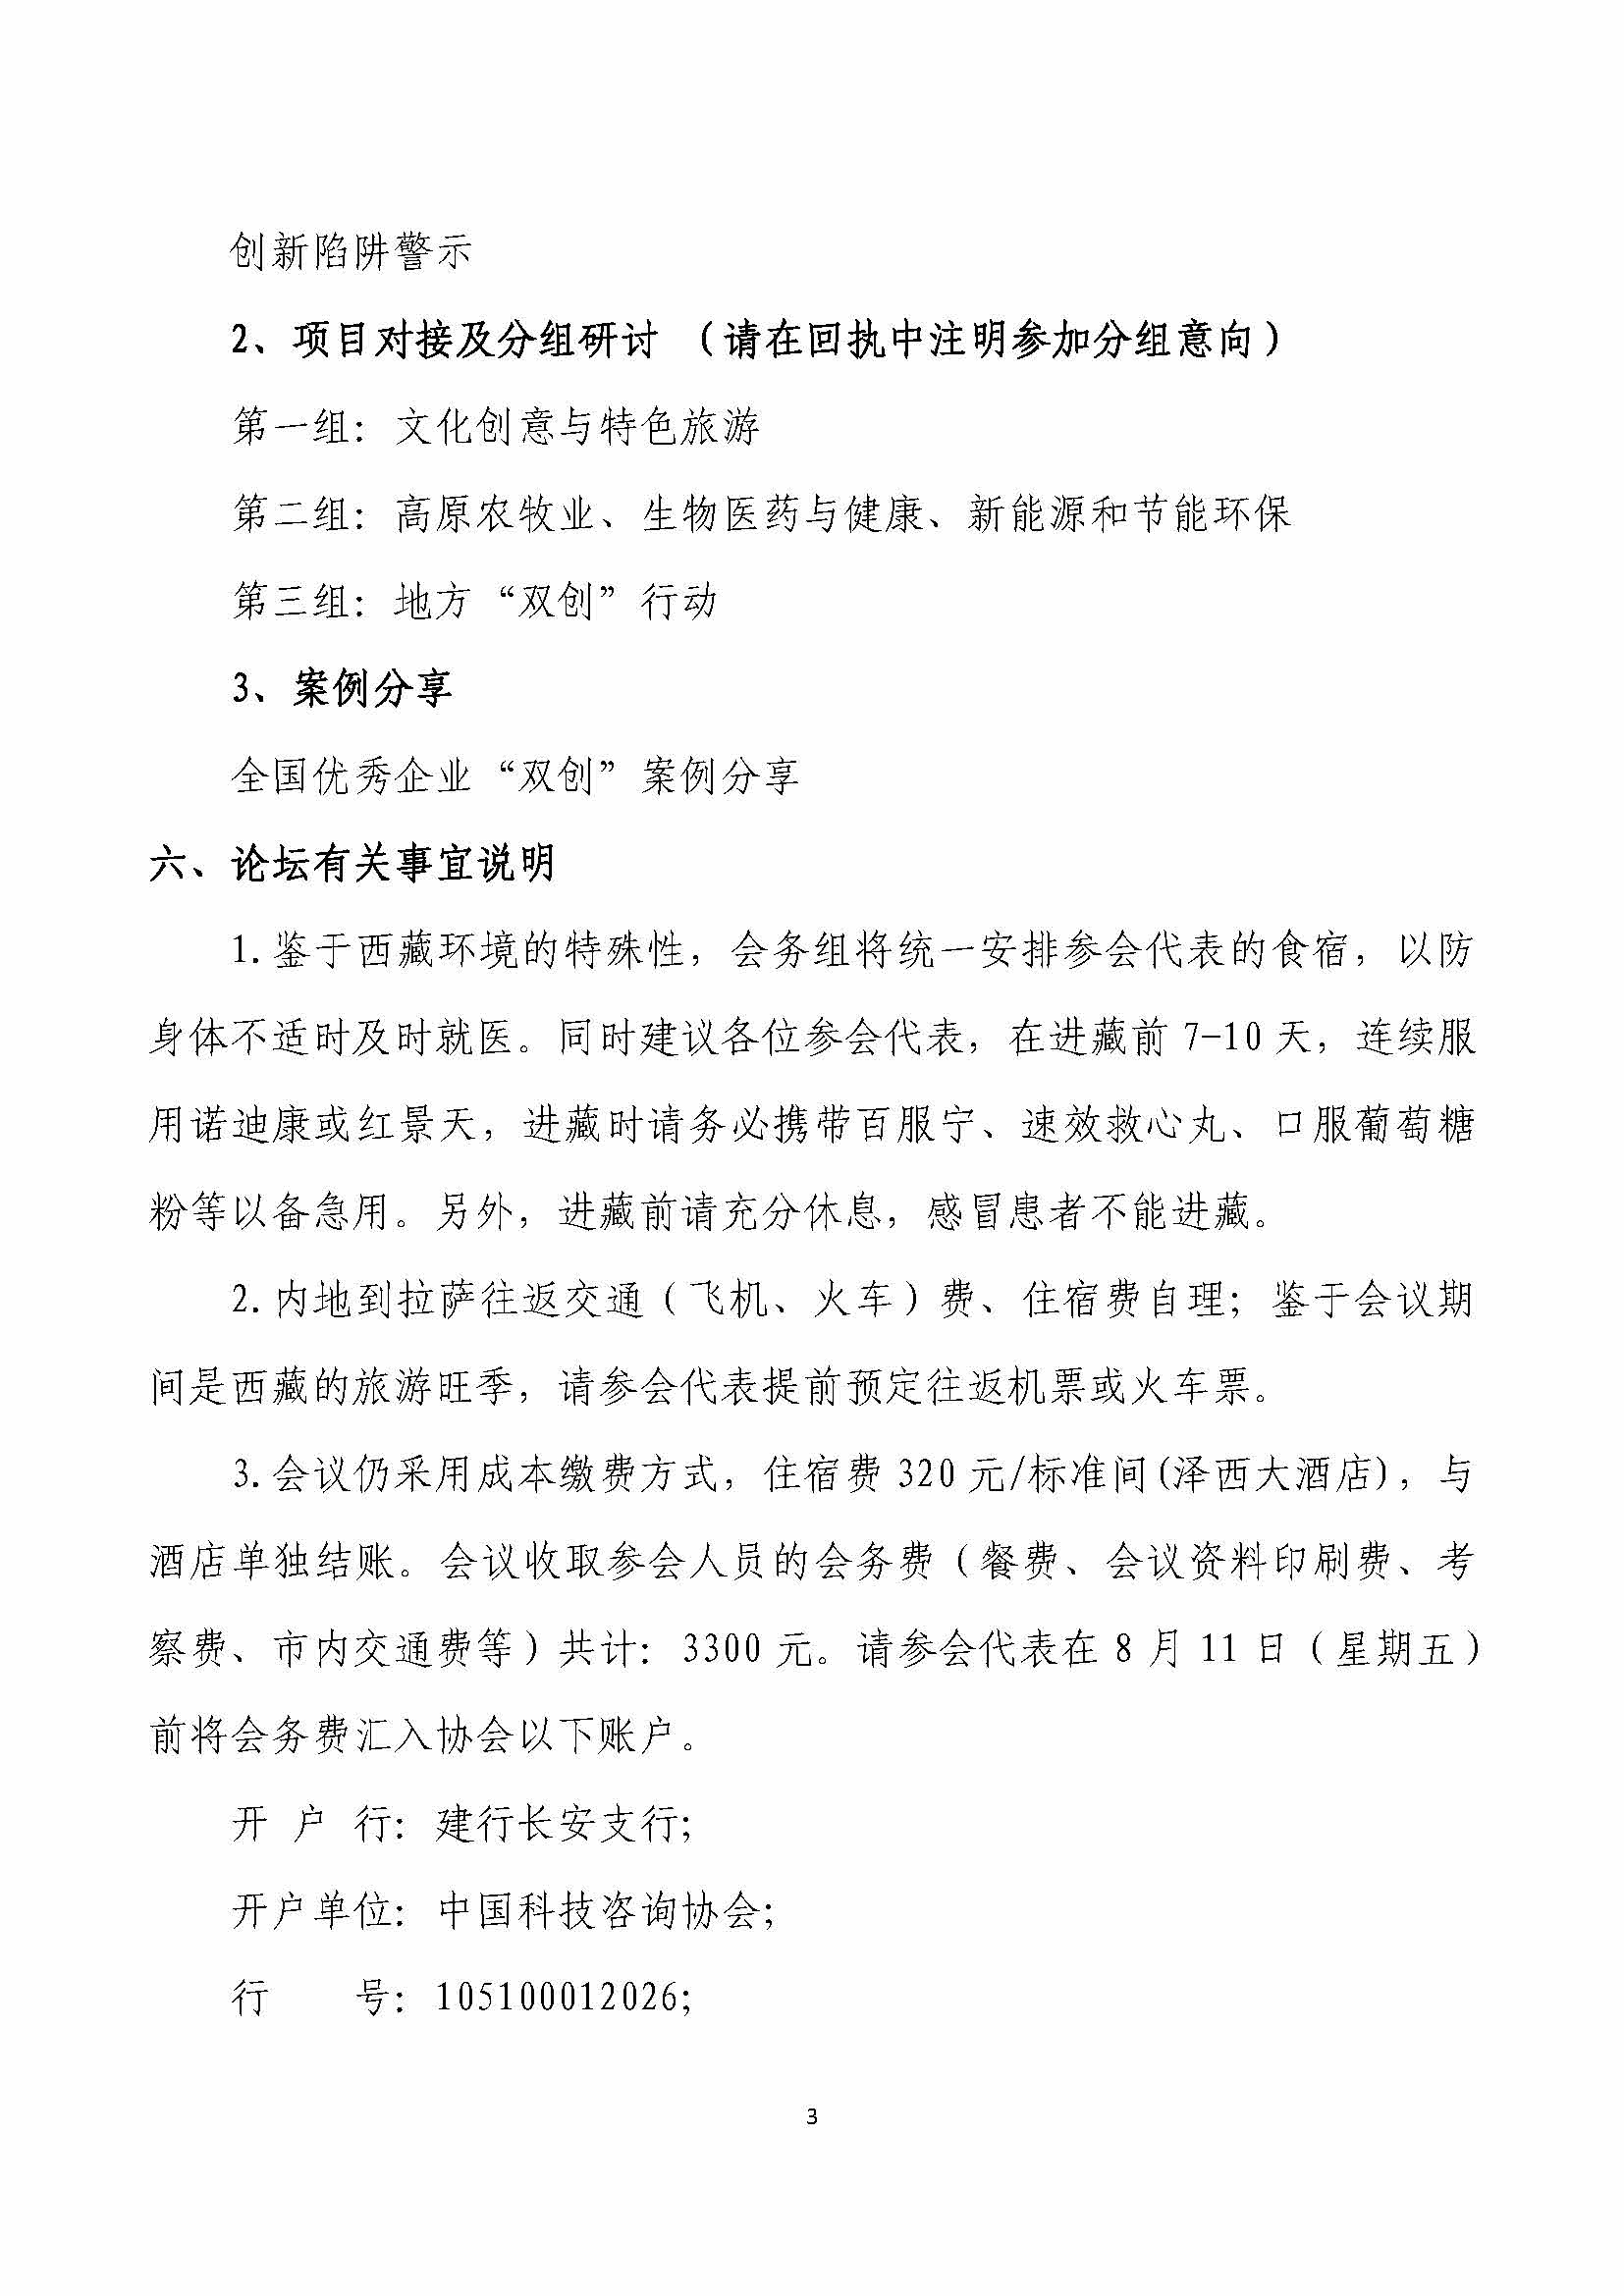 关于召开中国科技咨询协会首届（2017）创新创业高峰论坛的通知_页面_3.jpg